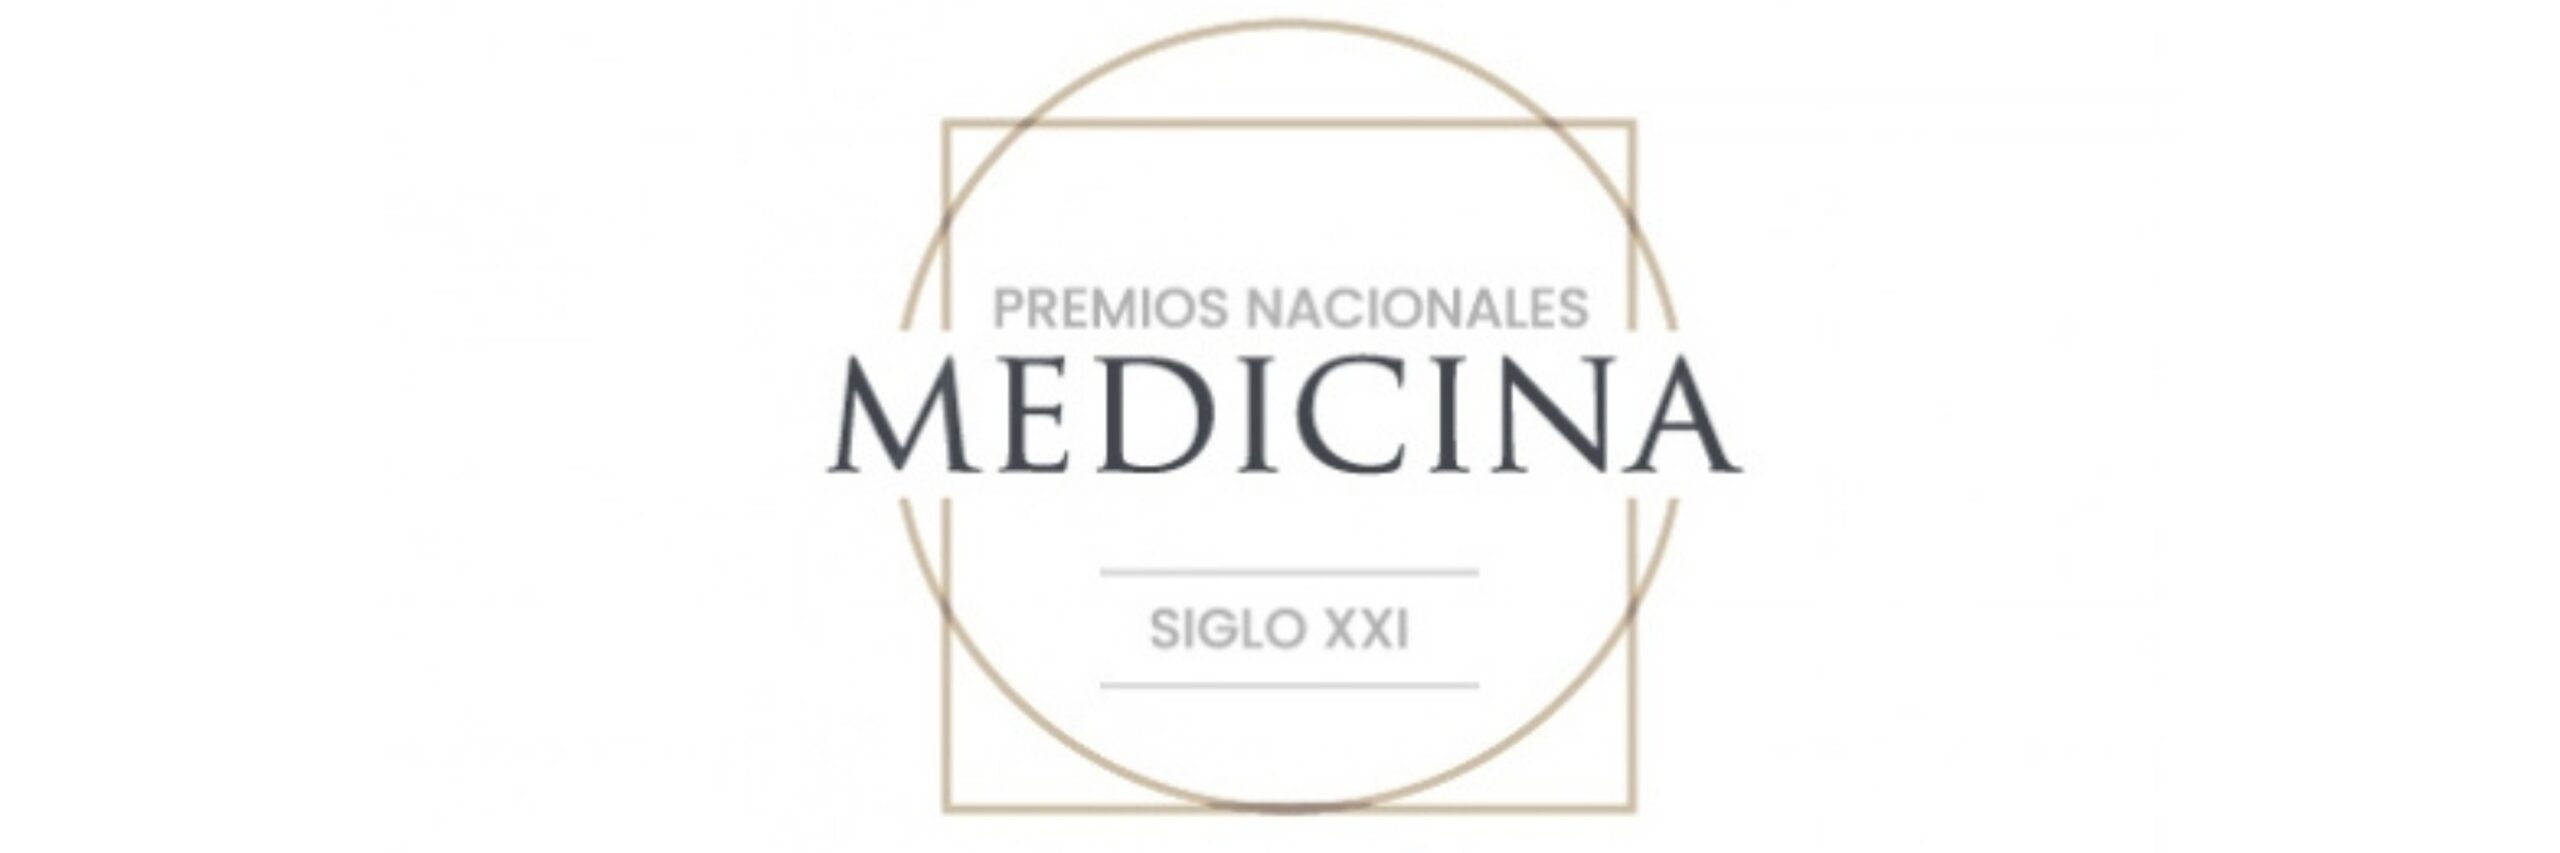 Traumatólogo en Alicante - Premios Nacionales de Medicina | KLINIK PM